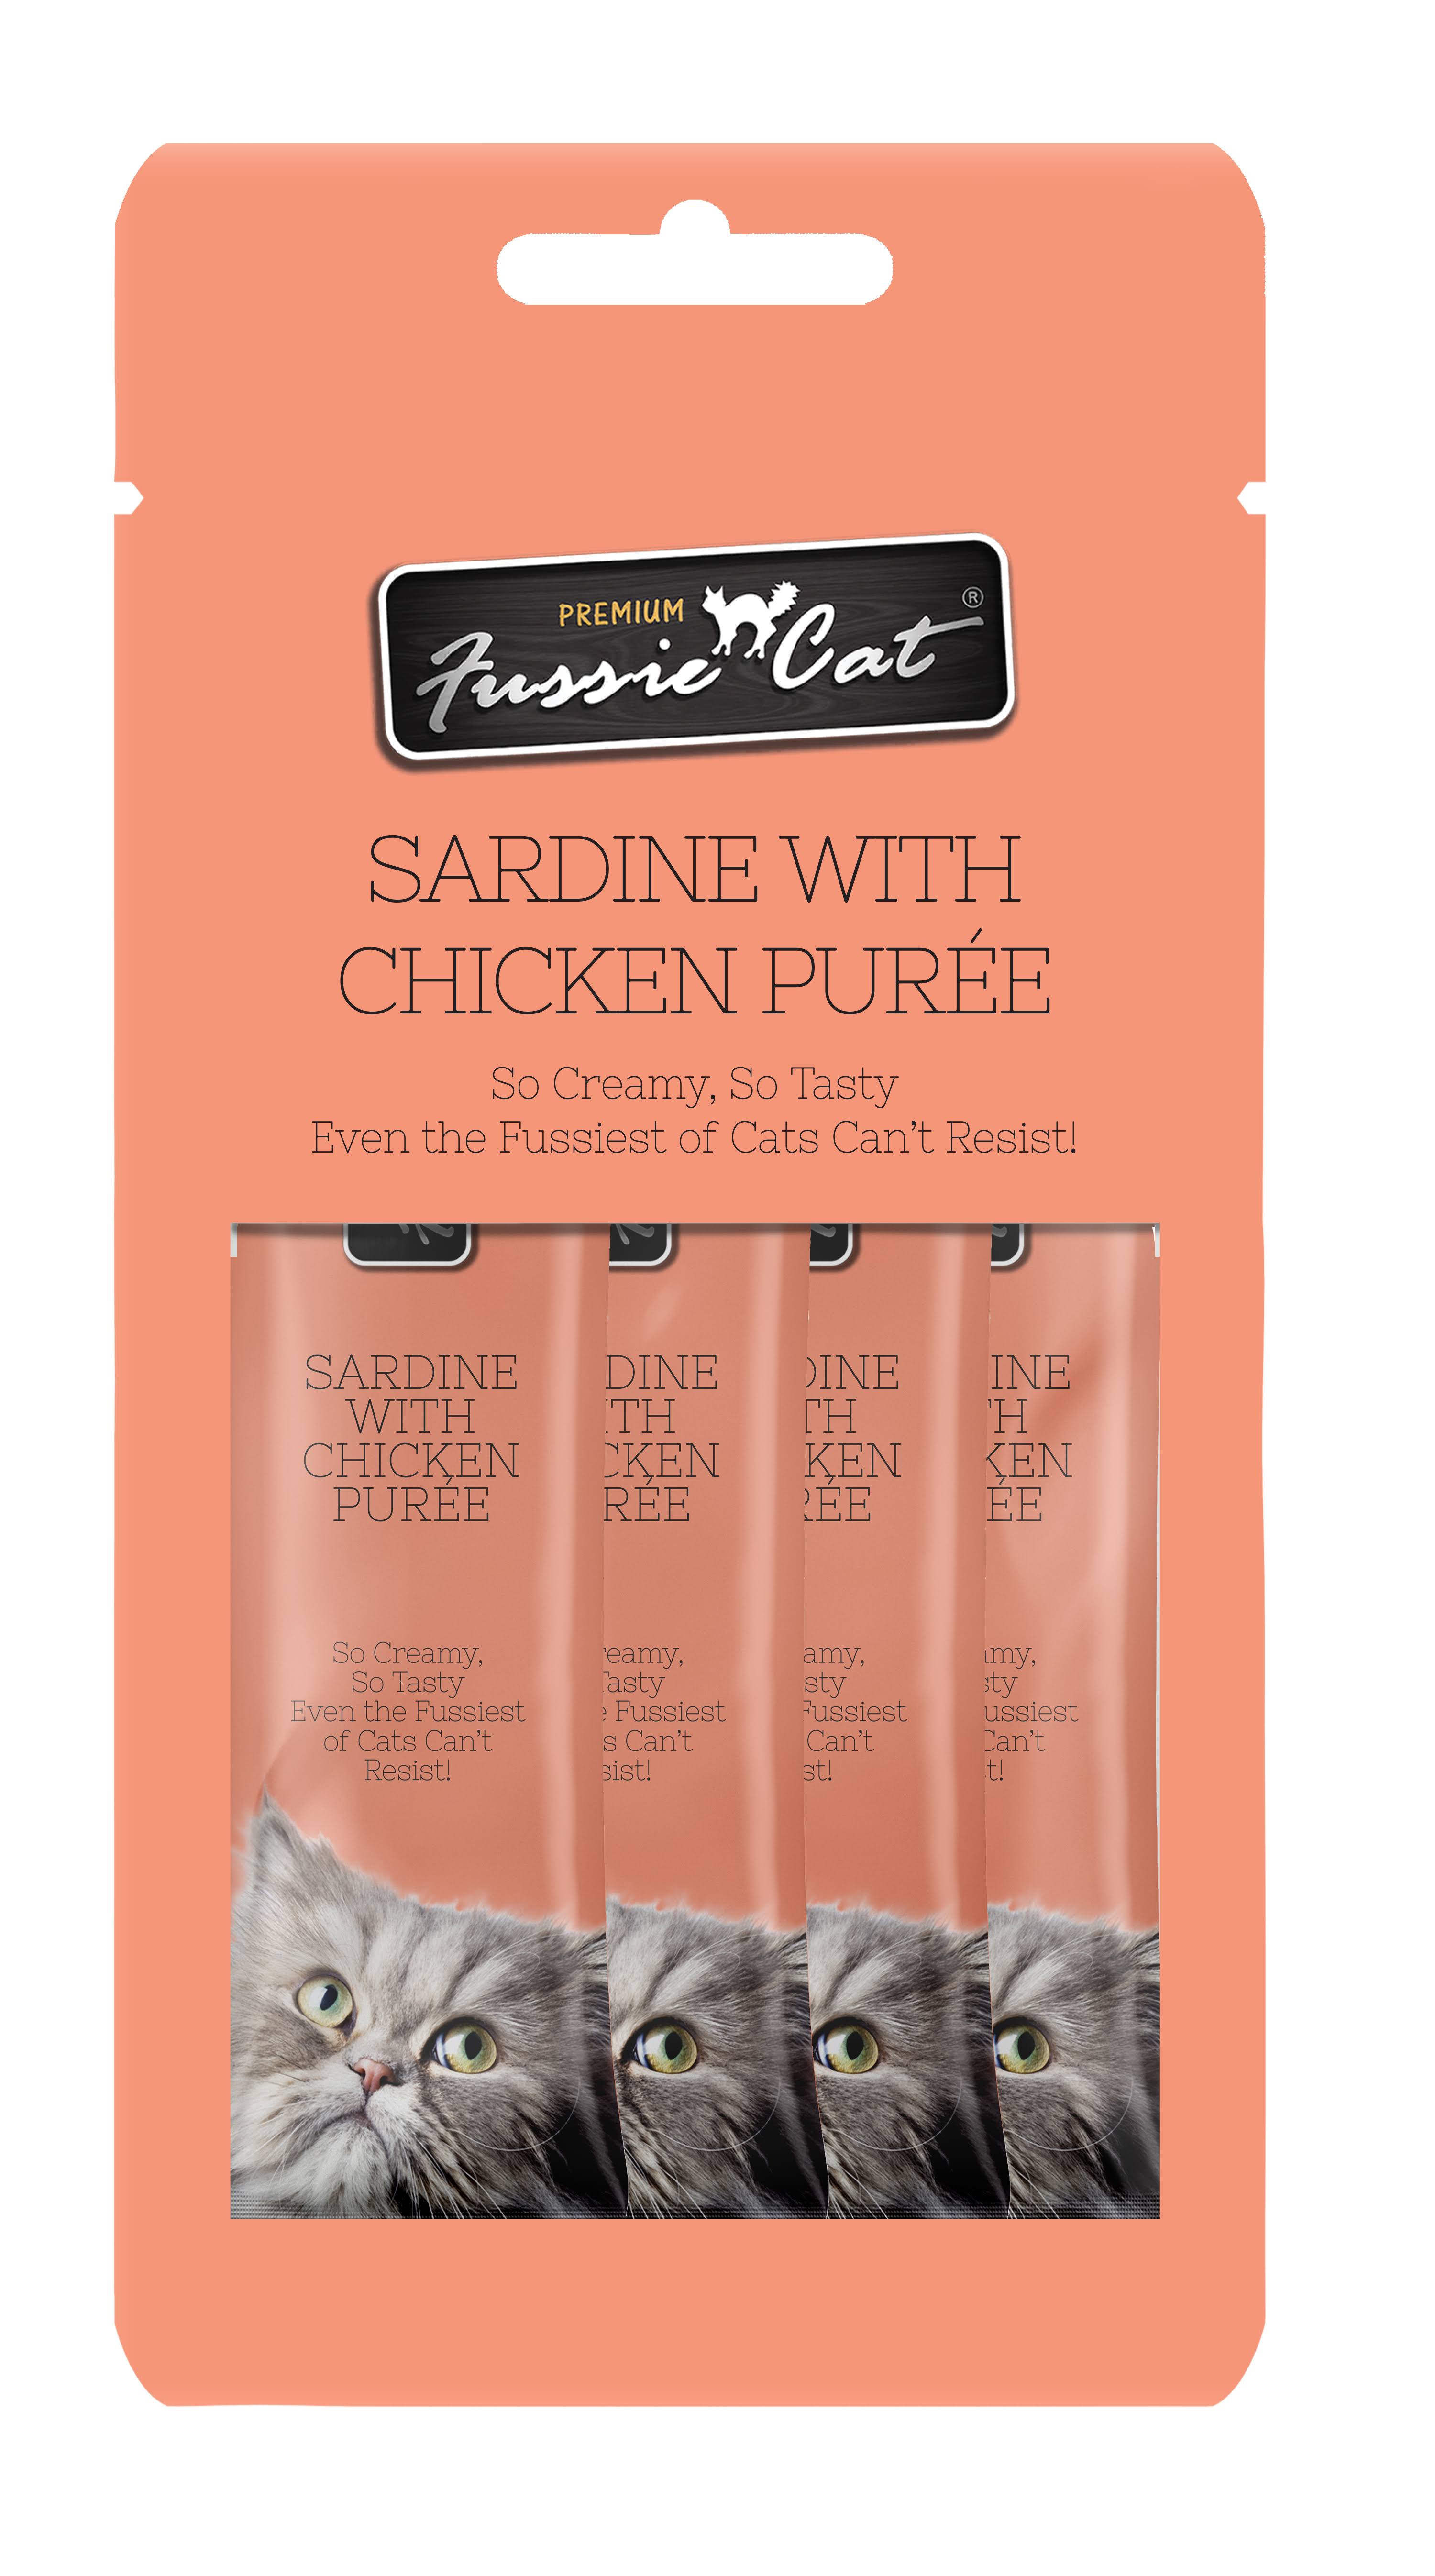 Fussie Cat Sardine & Chicken Puree Cat Food 4 Pack